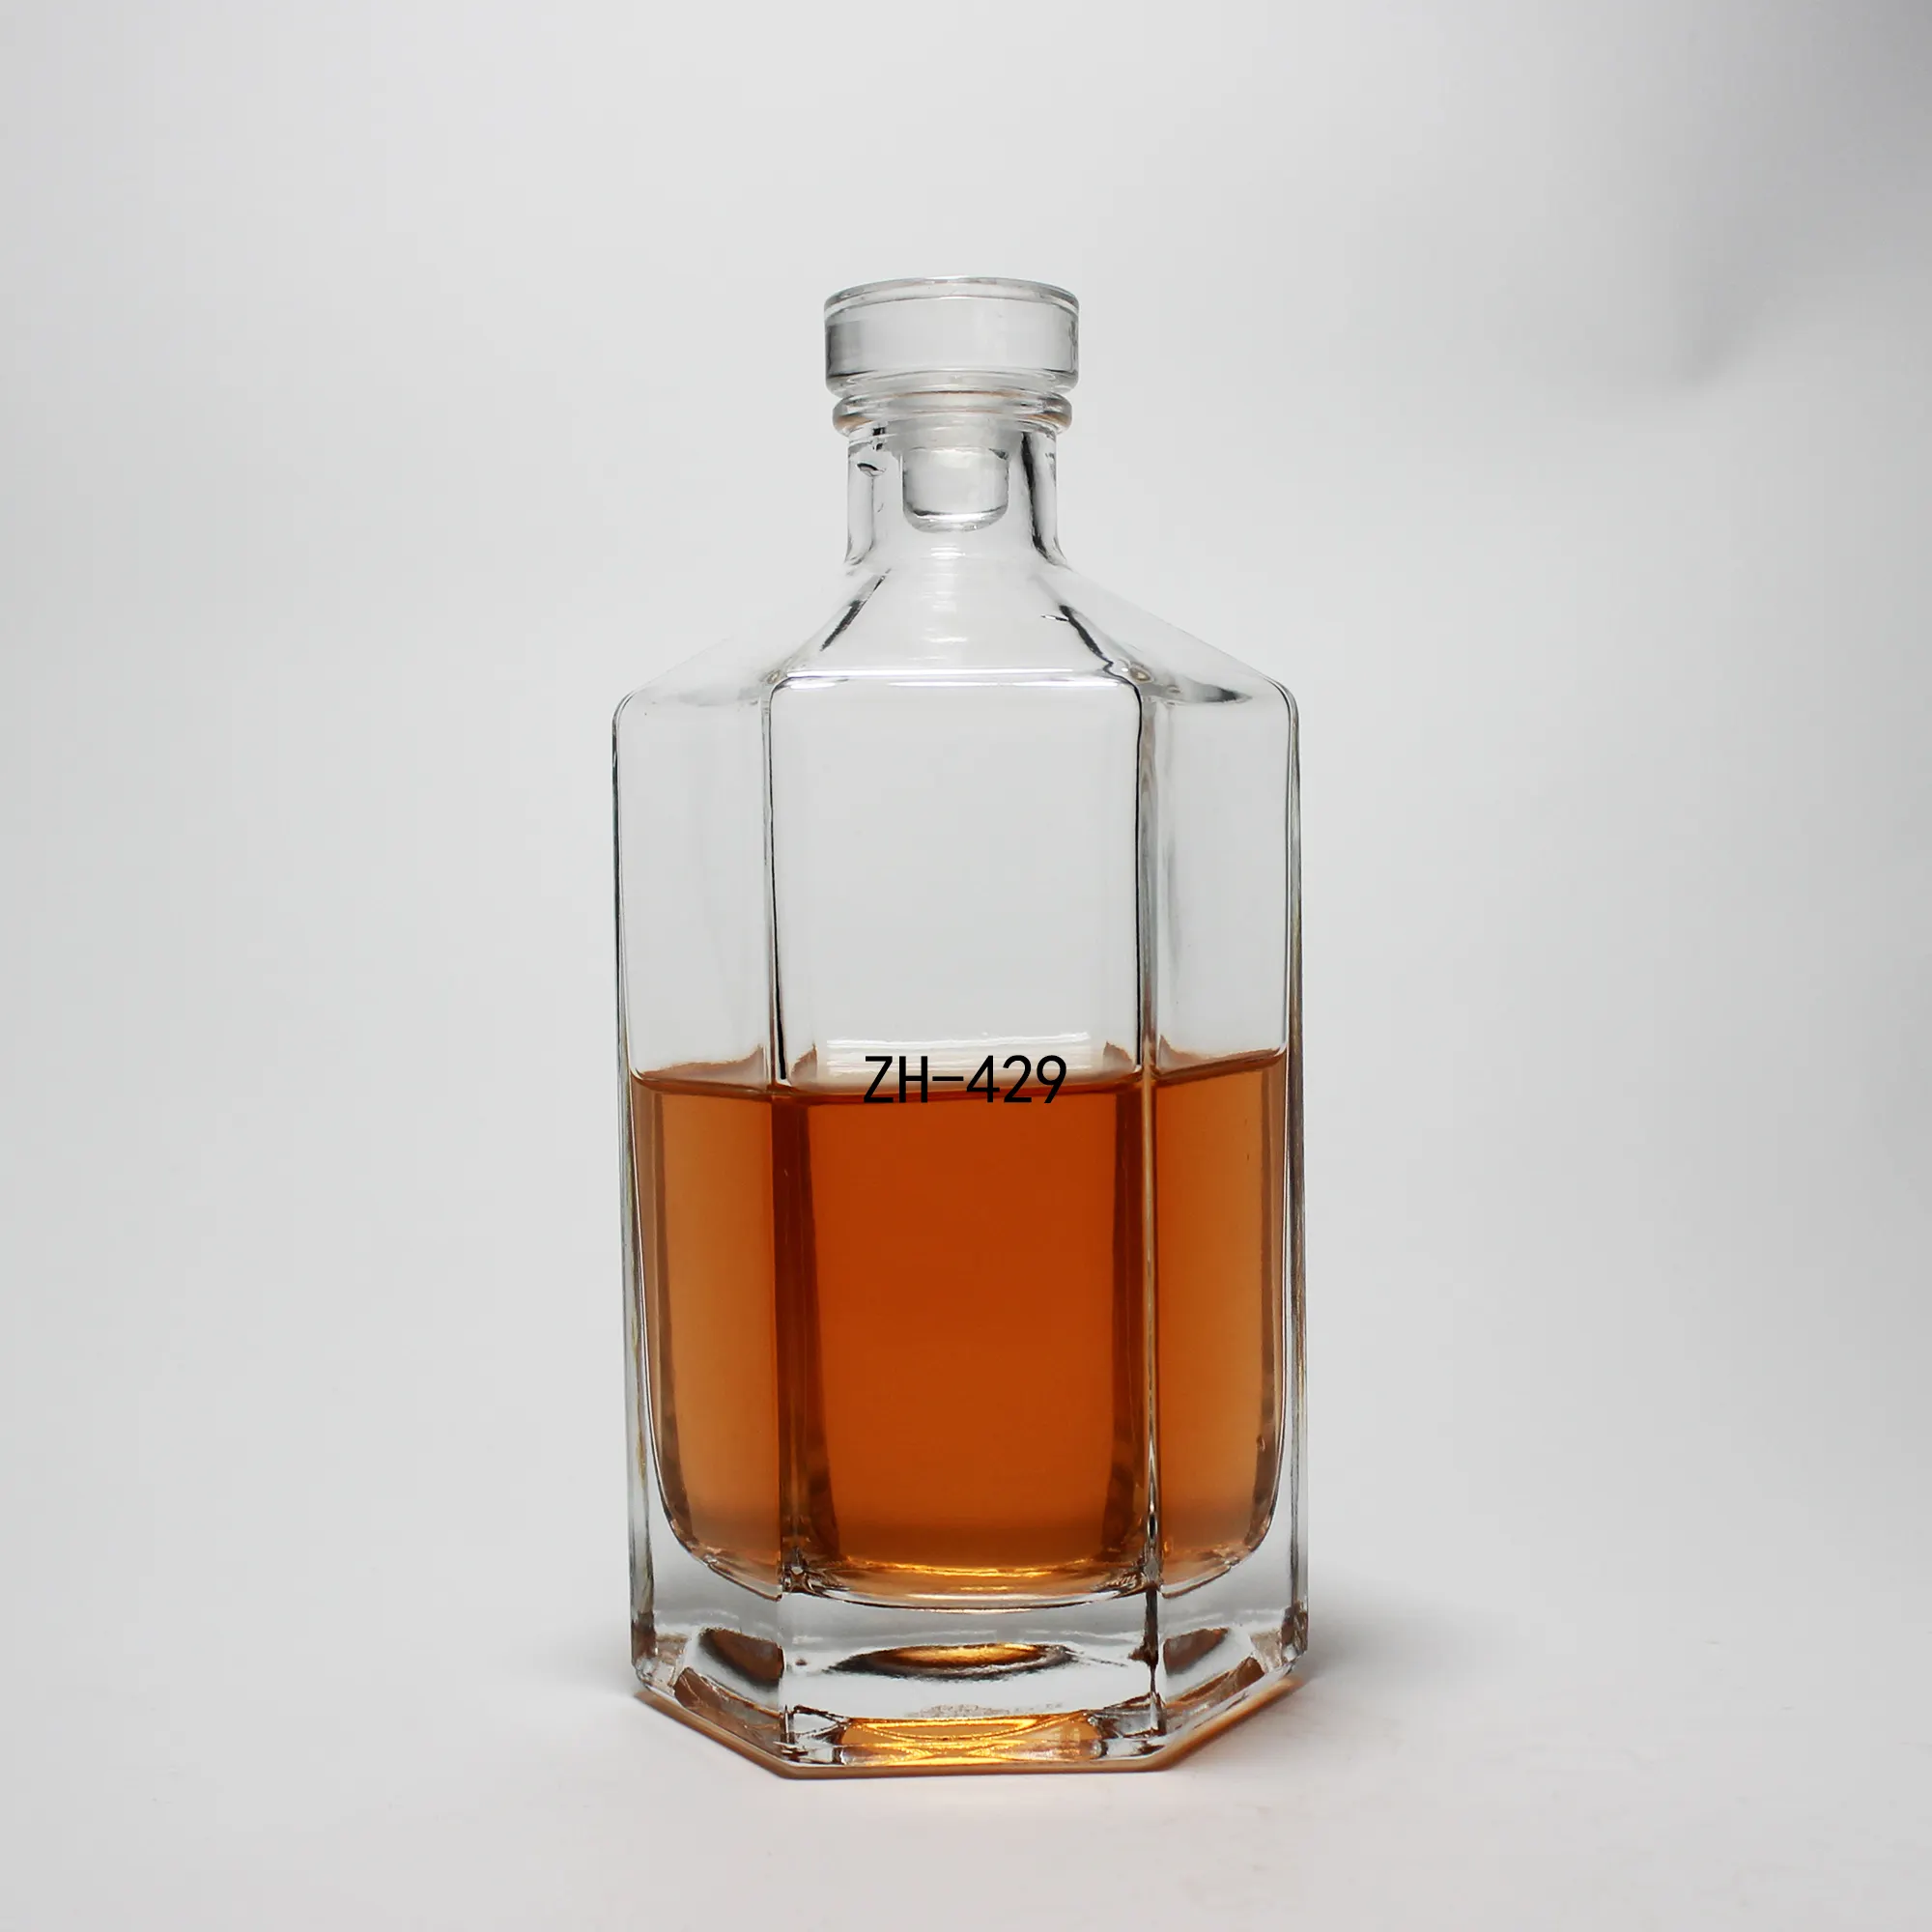 Individuelle Spirituosen Likör Rum Tequila Spirituosen leere Flasche 375 ml mit gutem Preis